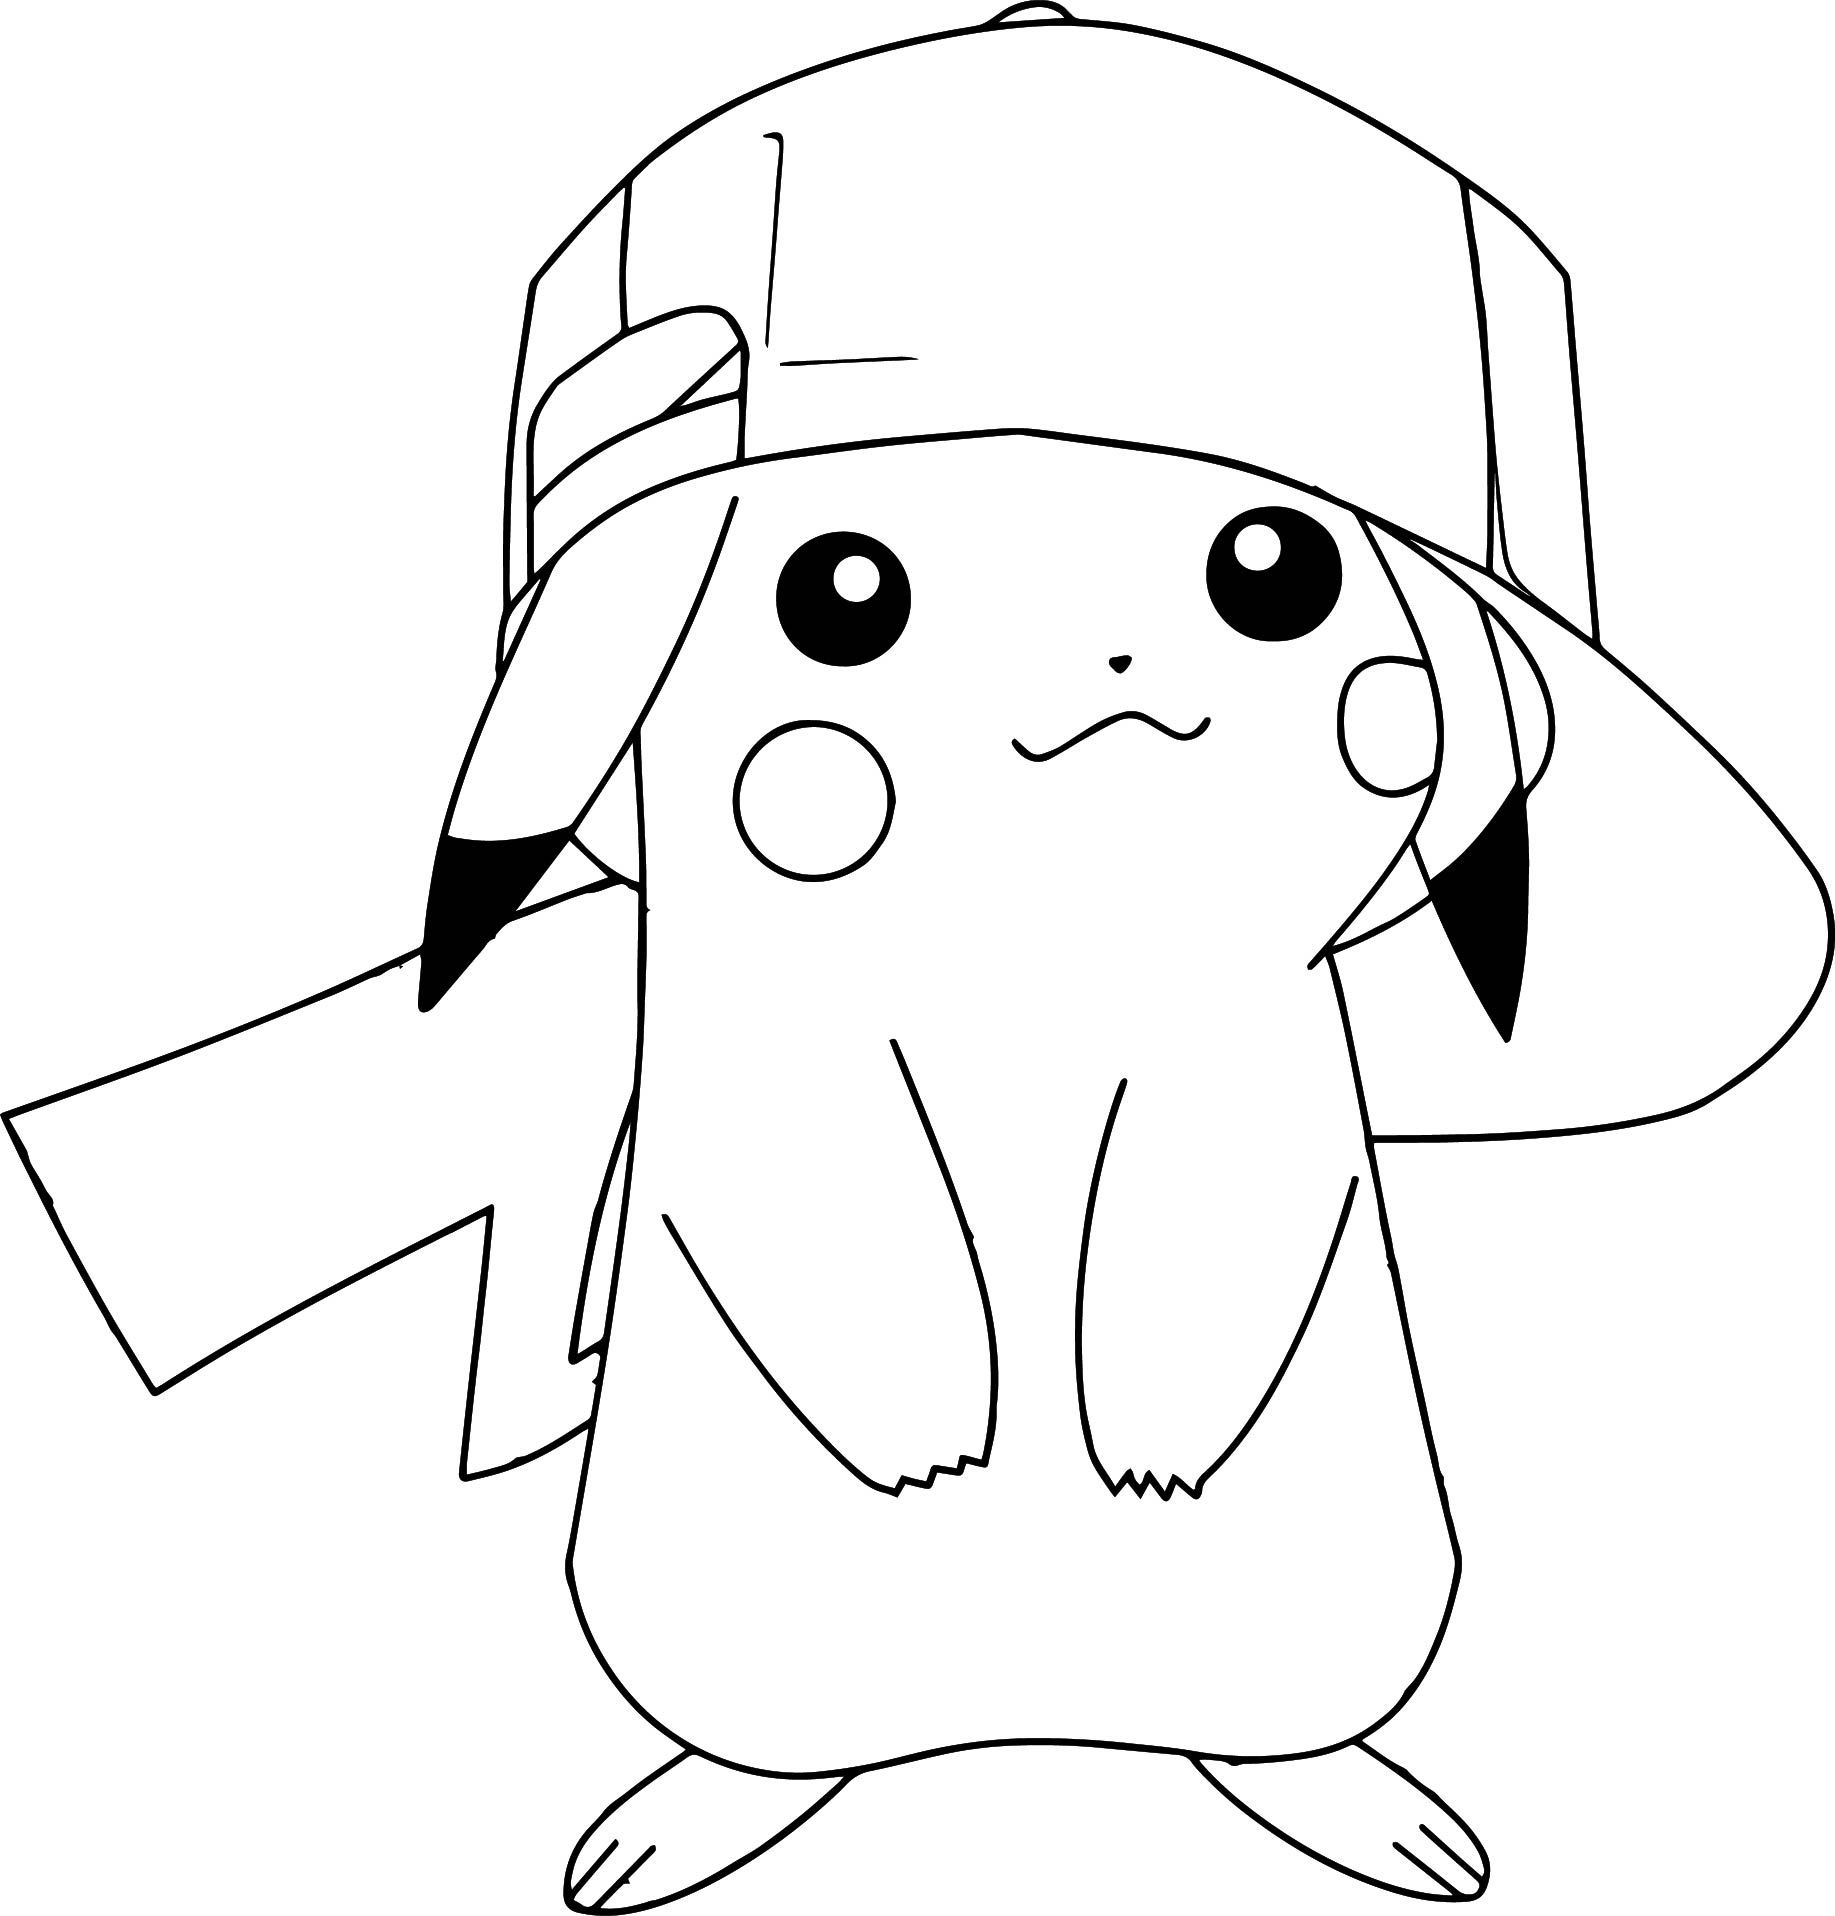 Hình ảnh Pokemon Pikachu đen trắng